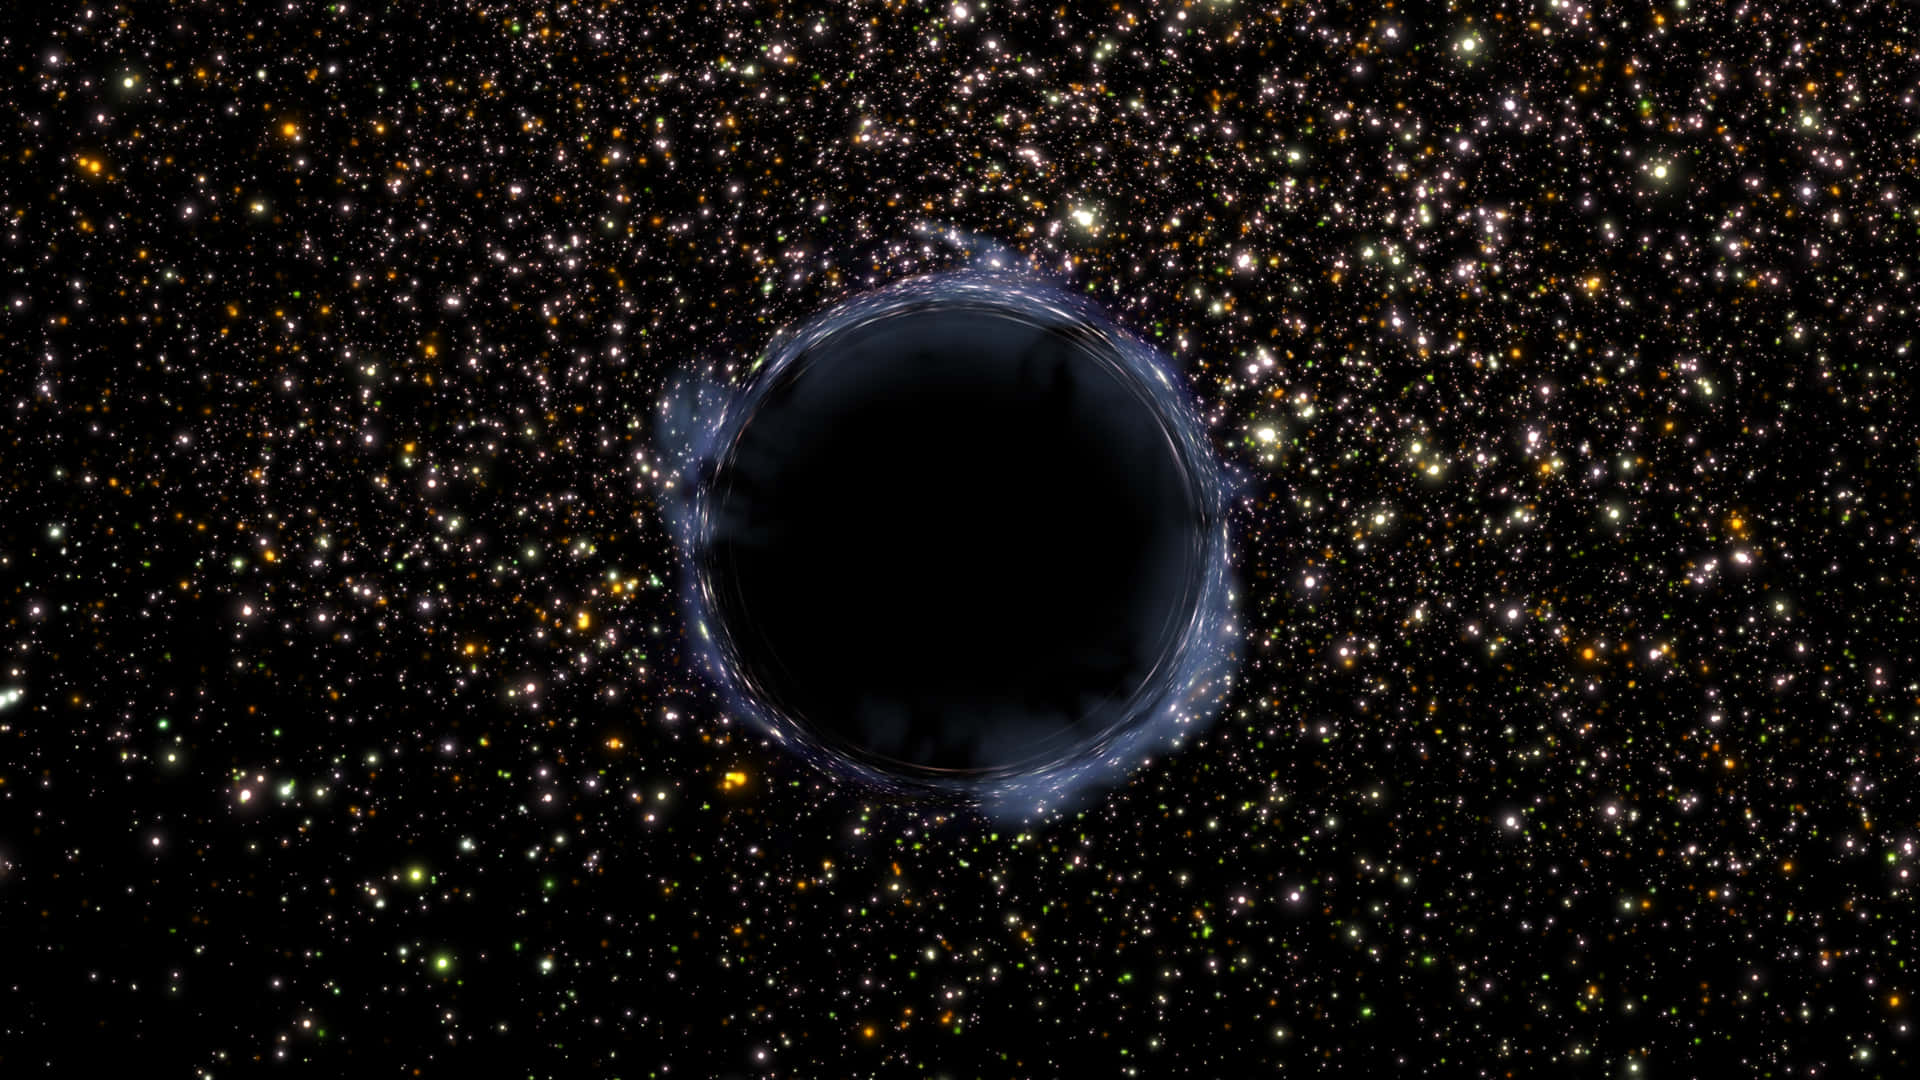 Black Hole Hubble Telescope Pictures 1920 X 1080